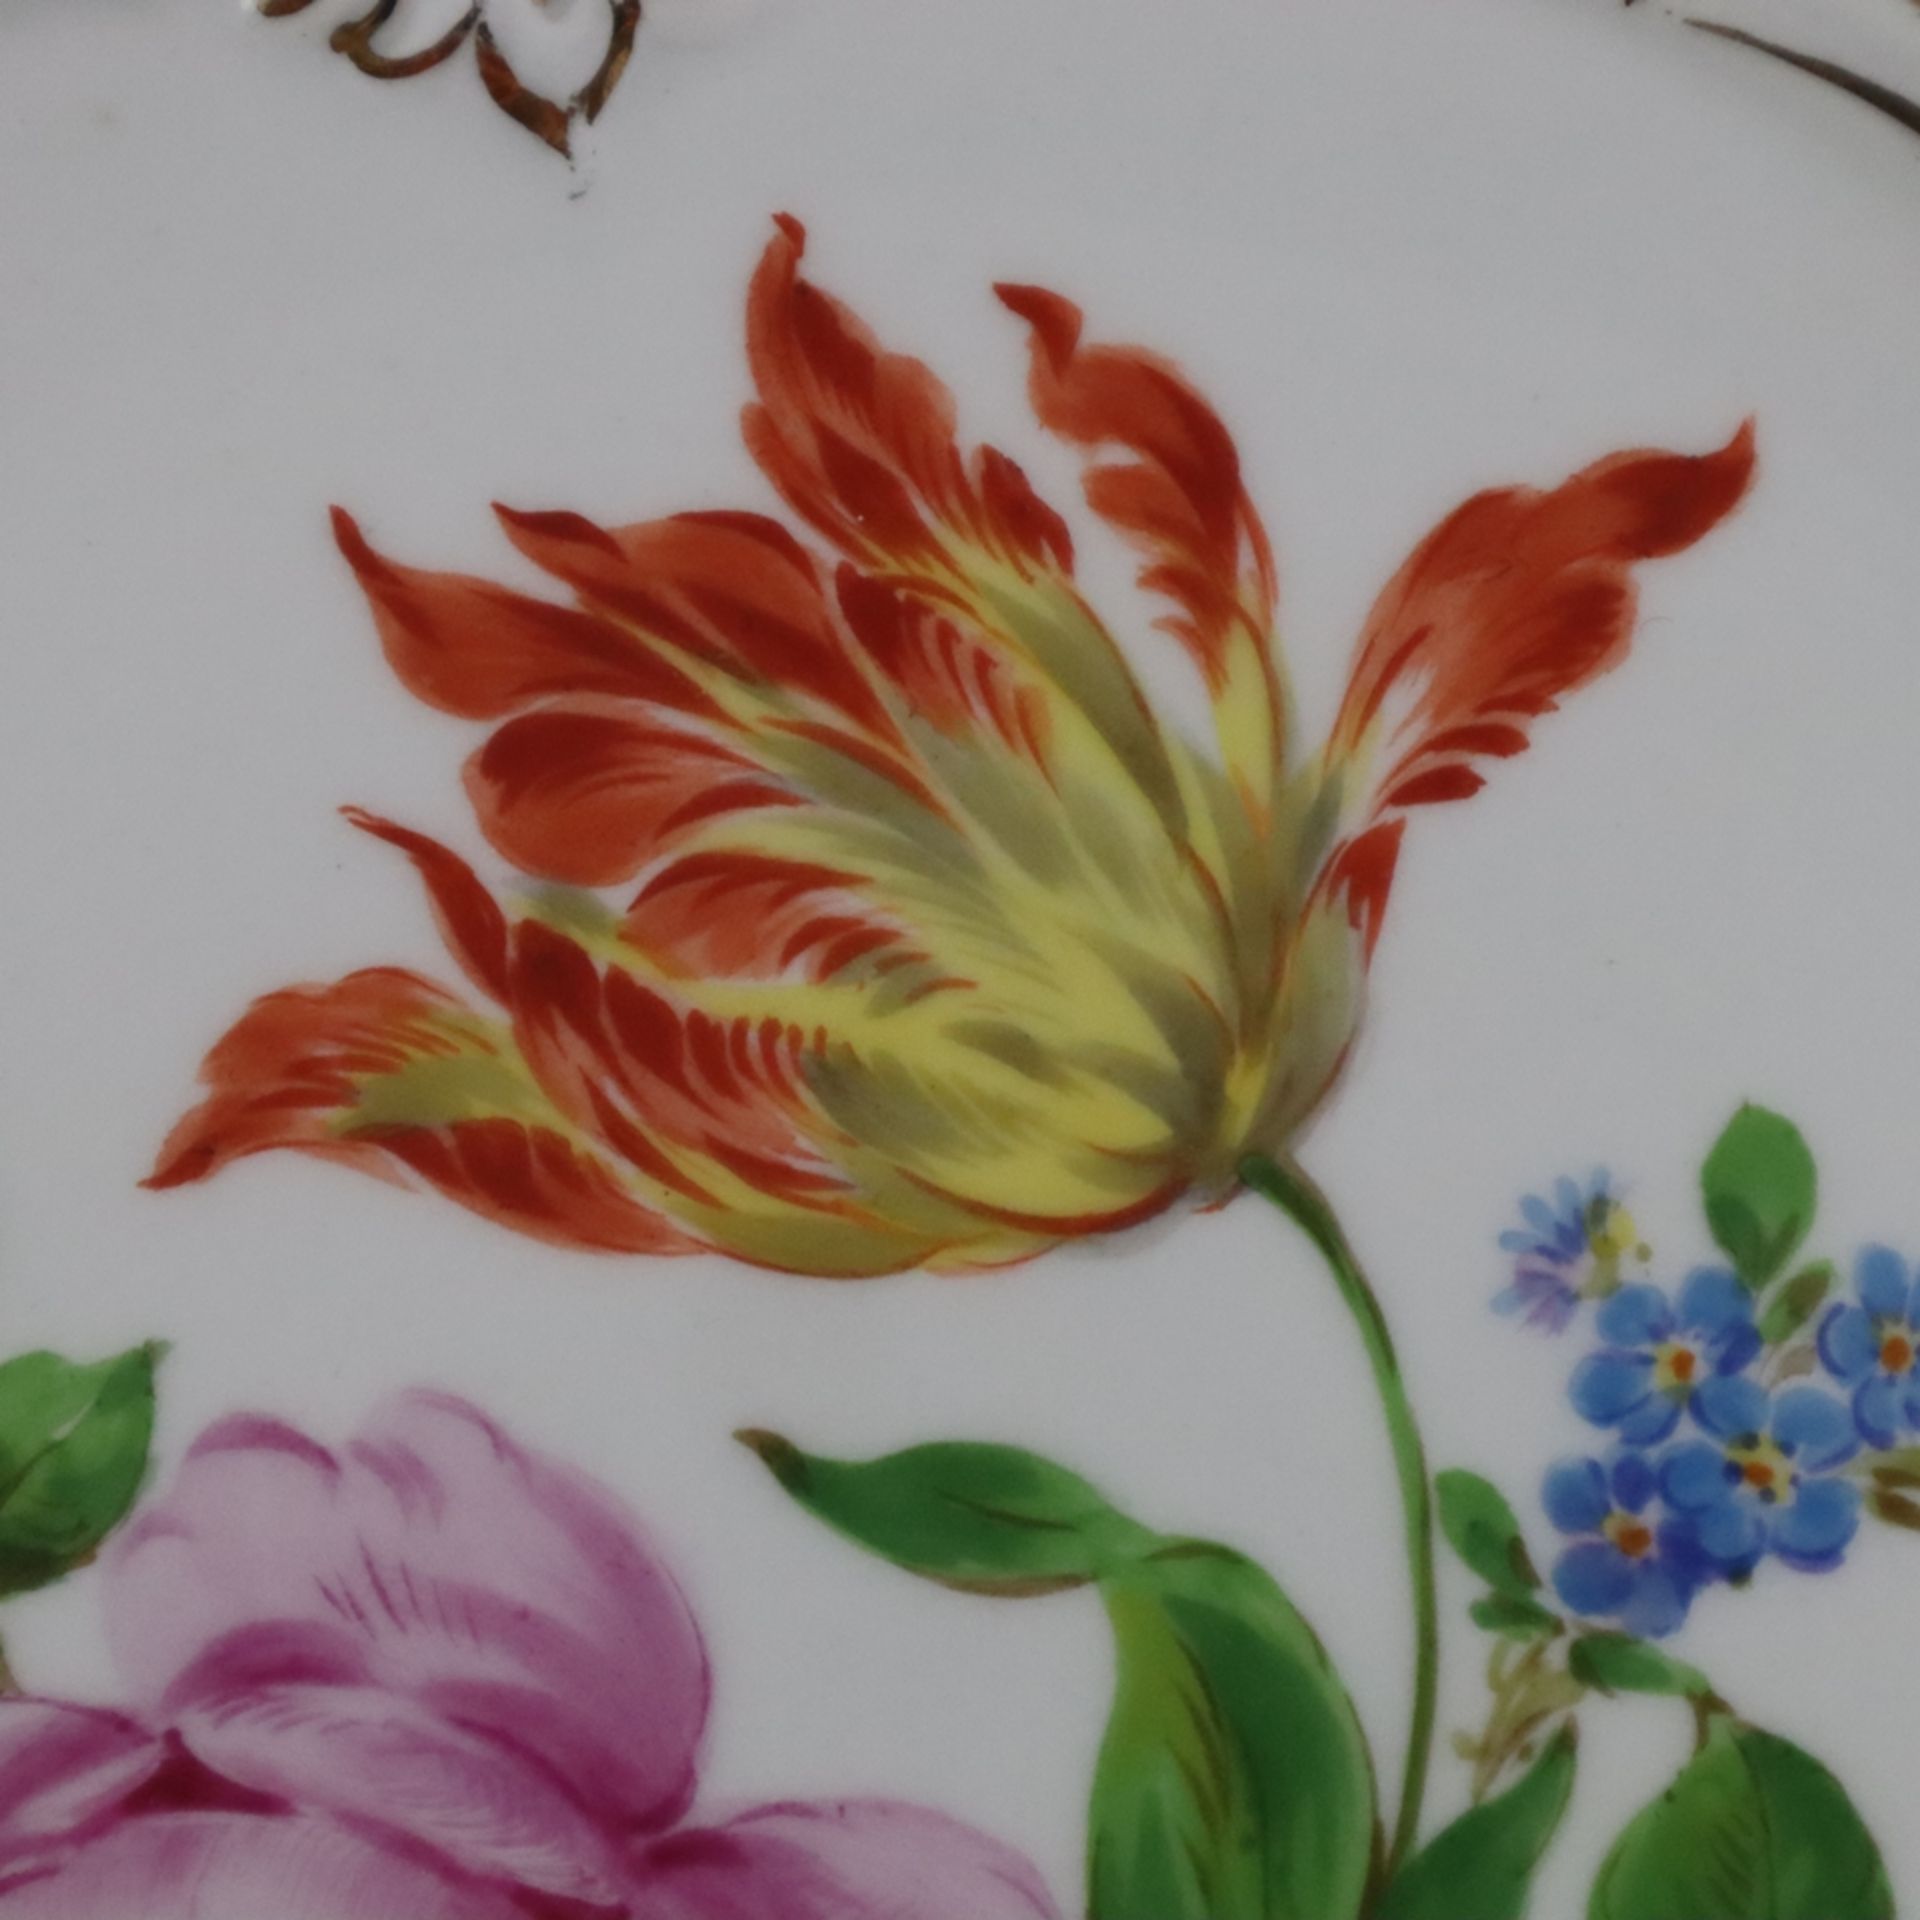 Prunkschale - Meissen, 20. Jh., Porzellan, polychrome Blumenmalerei, vertiefte Form mit geschwungen - Bild 4 aus 9